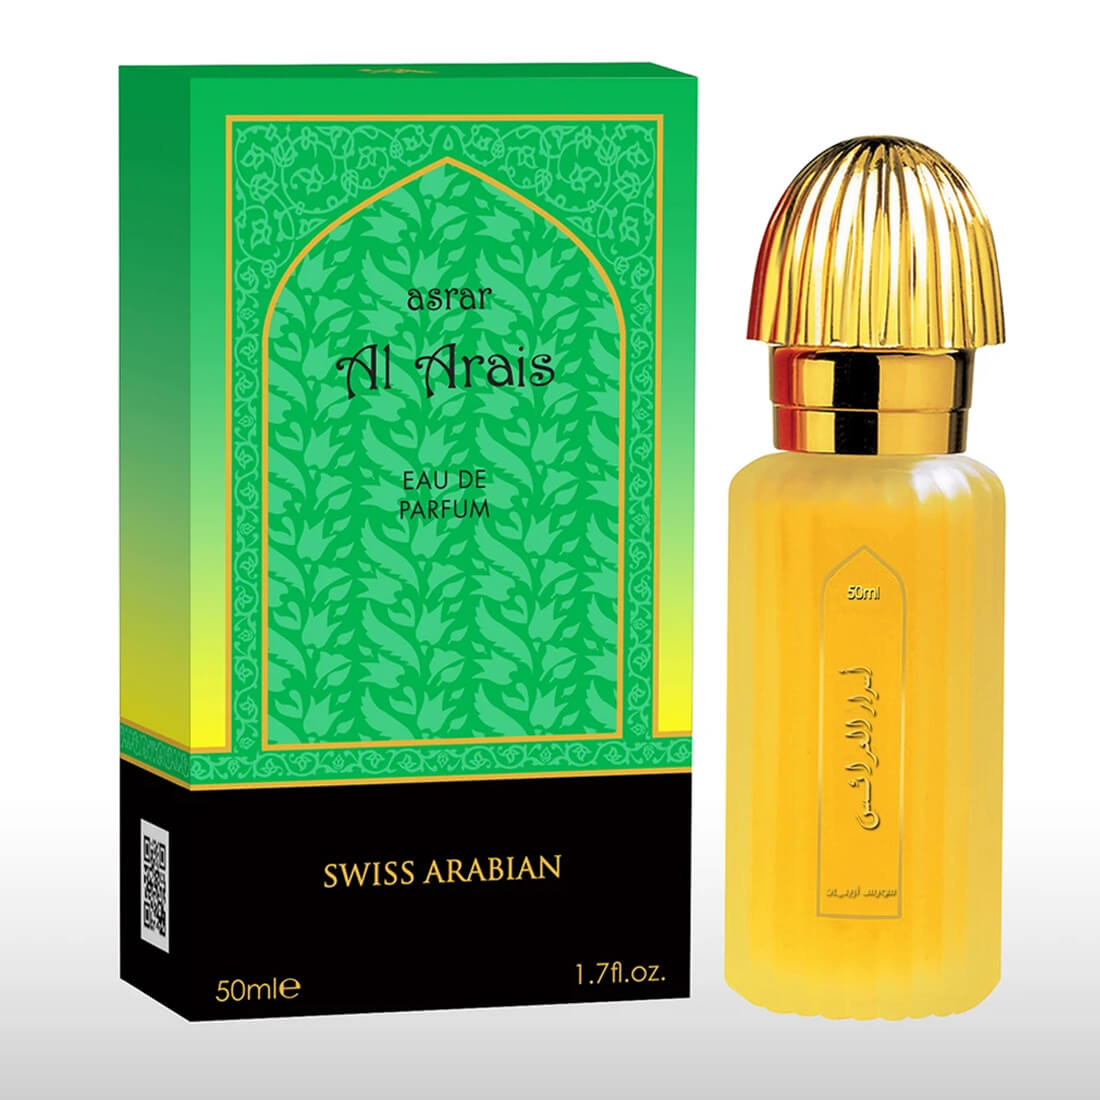 Swiss Arabian Asrar Al Arais Eau De Perfume 50ml